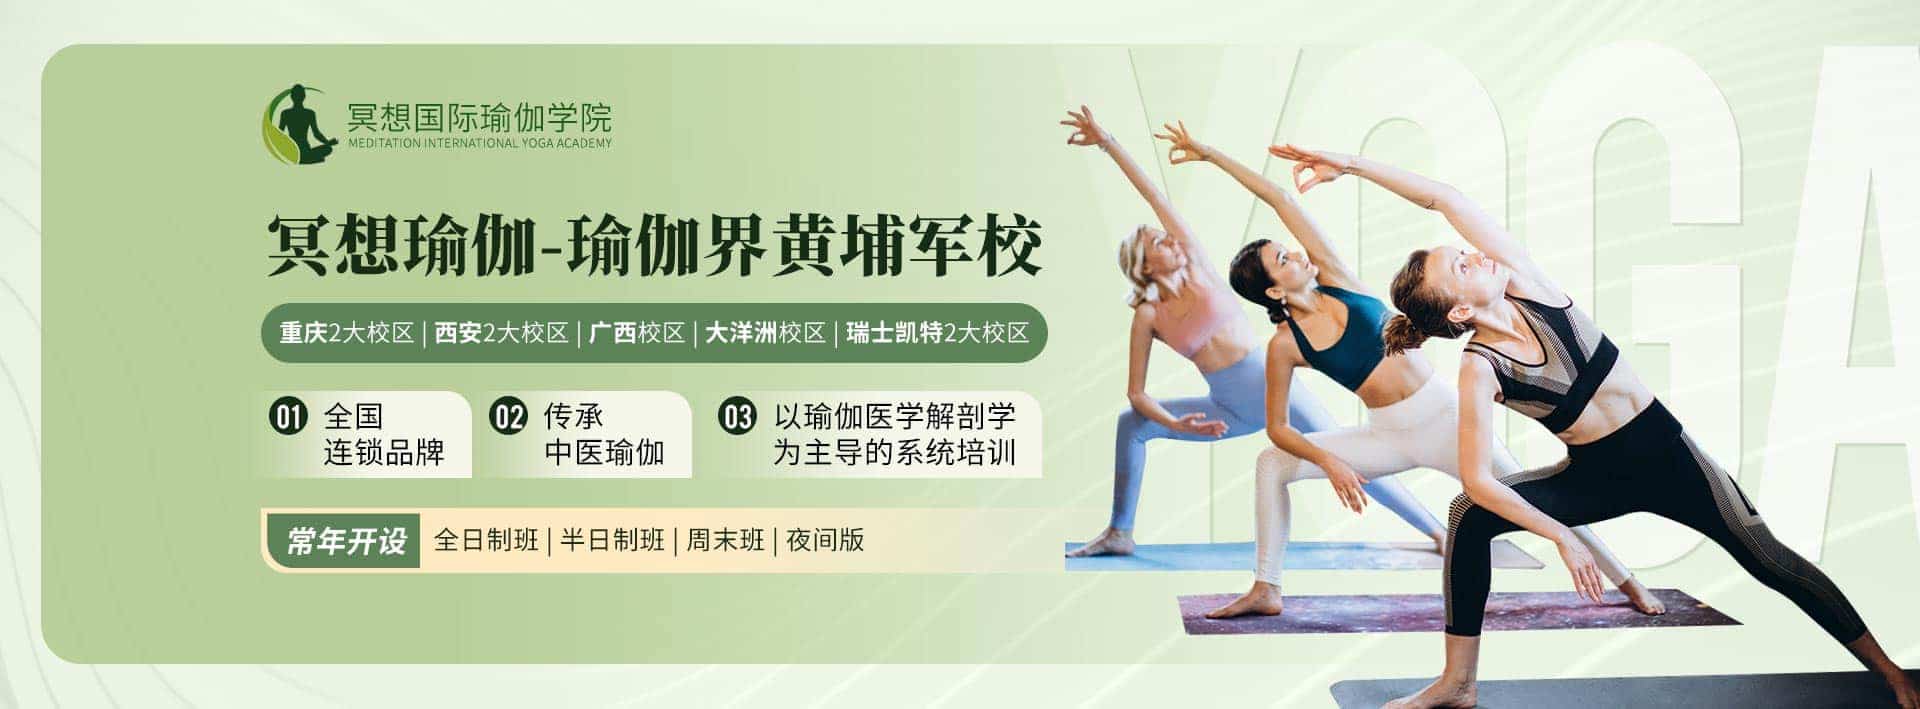 重庆冥想瑜伽健身有限公司